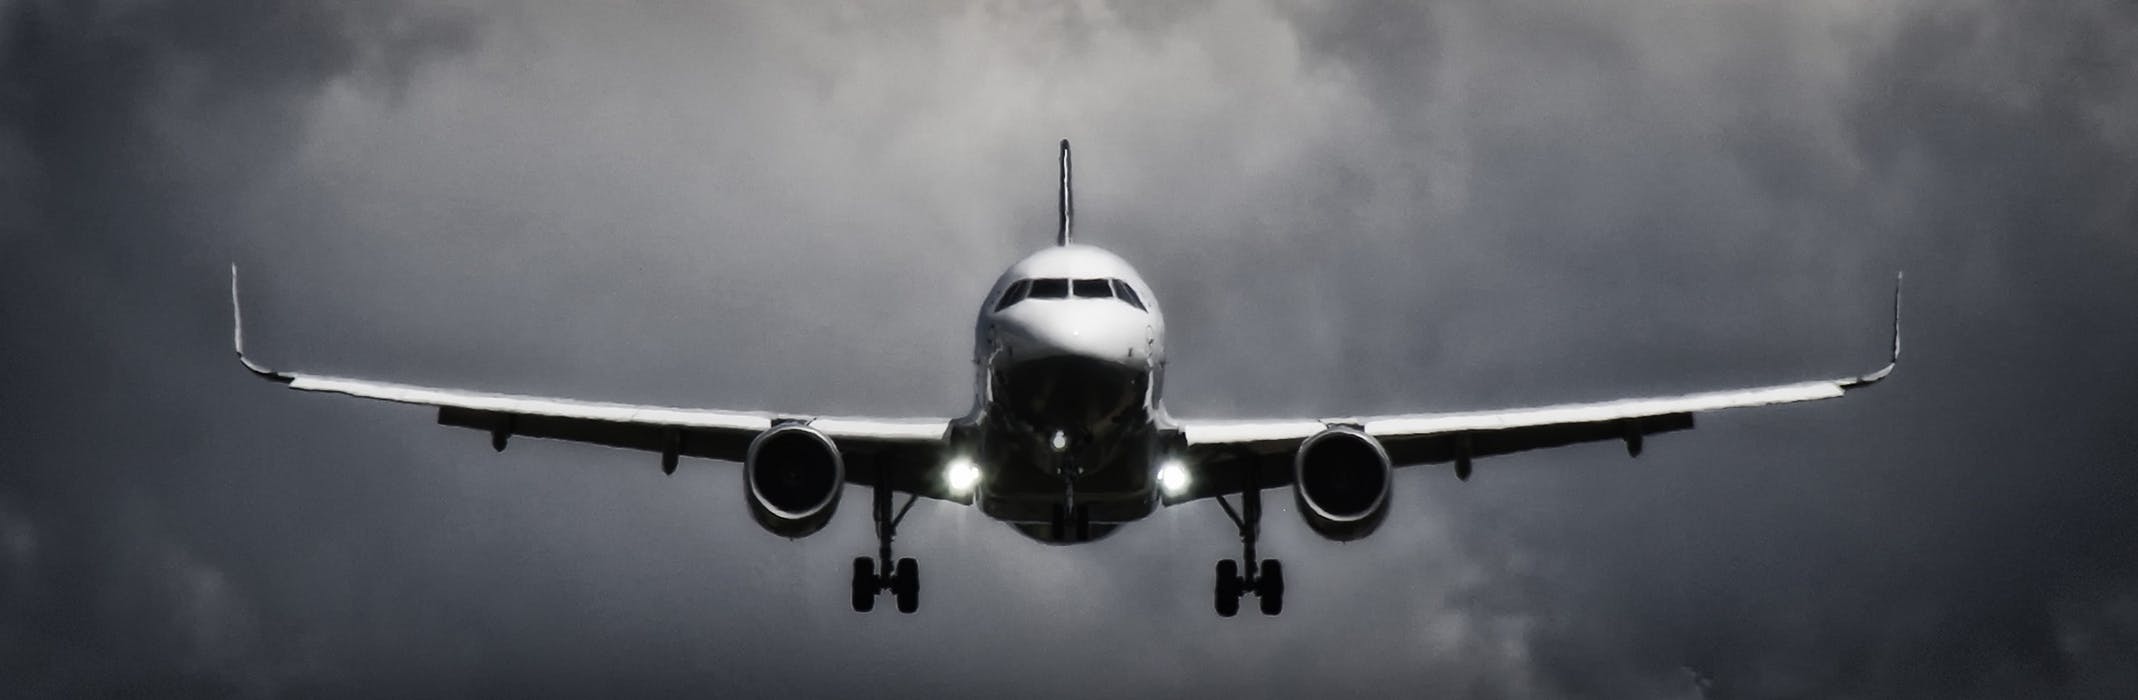 Flyg förutsätter avancerad ingenjörskonst